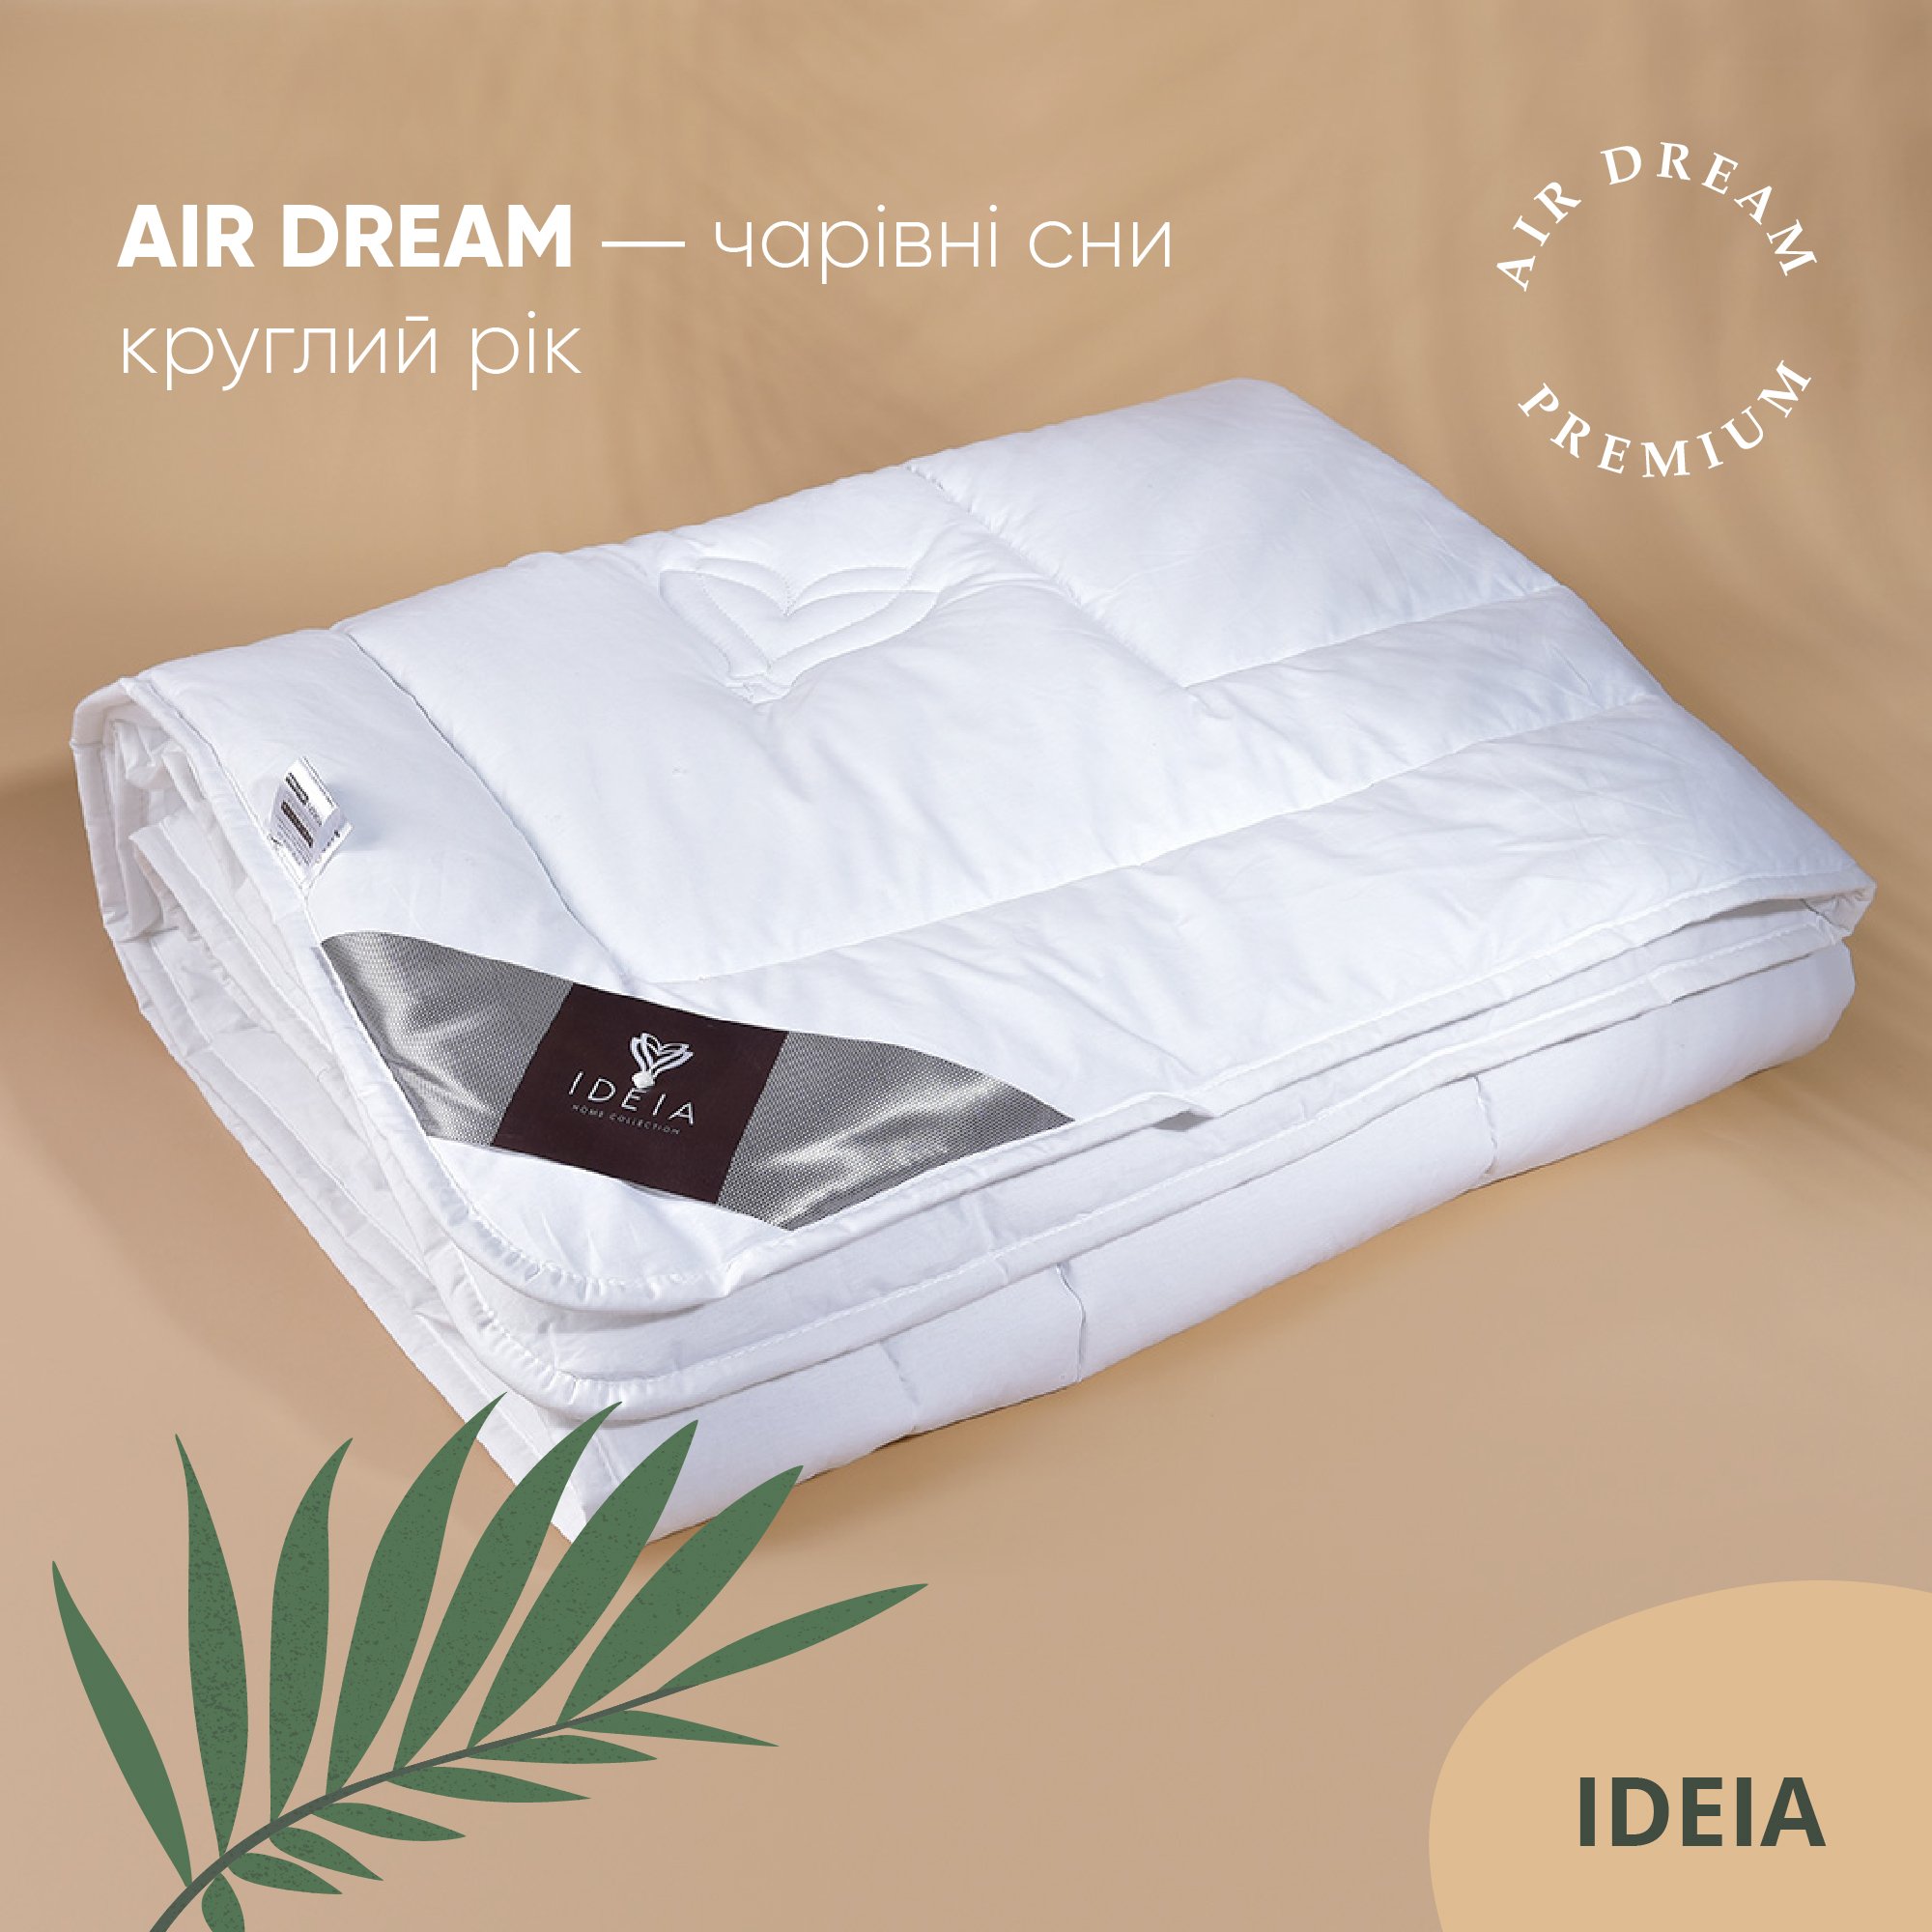 Ковдра Ideia Air Dream Premium літня, 210х140, білий (8-11693) - фото 6